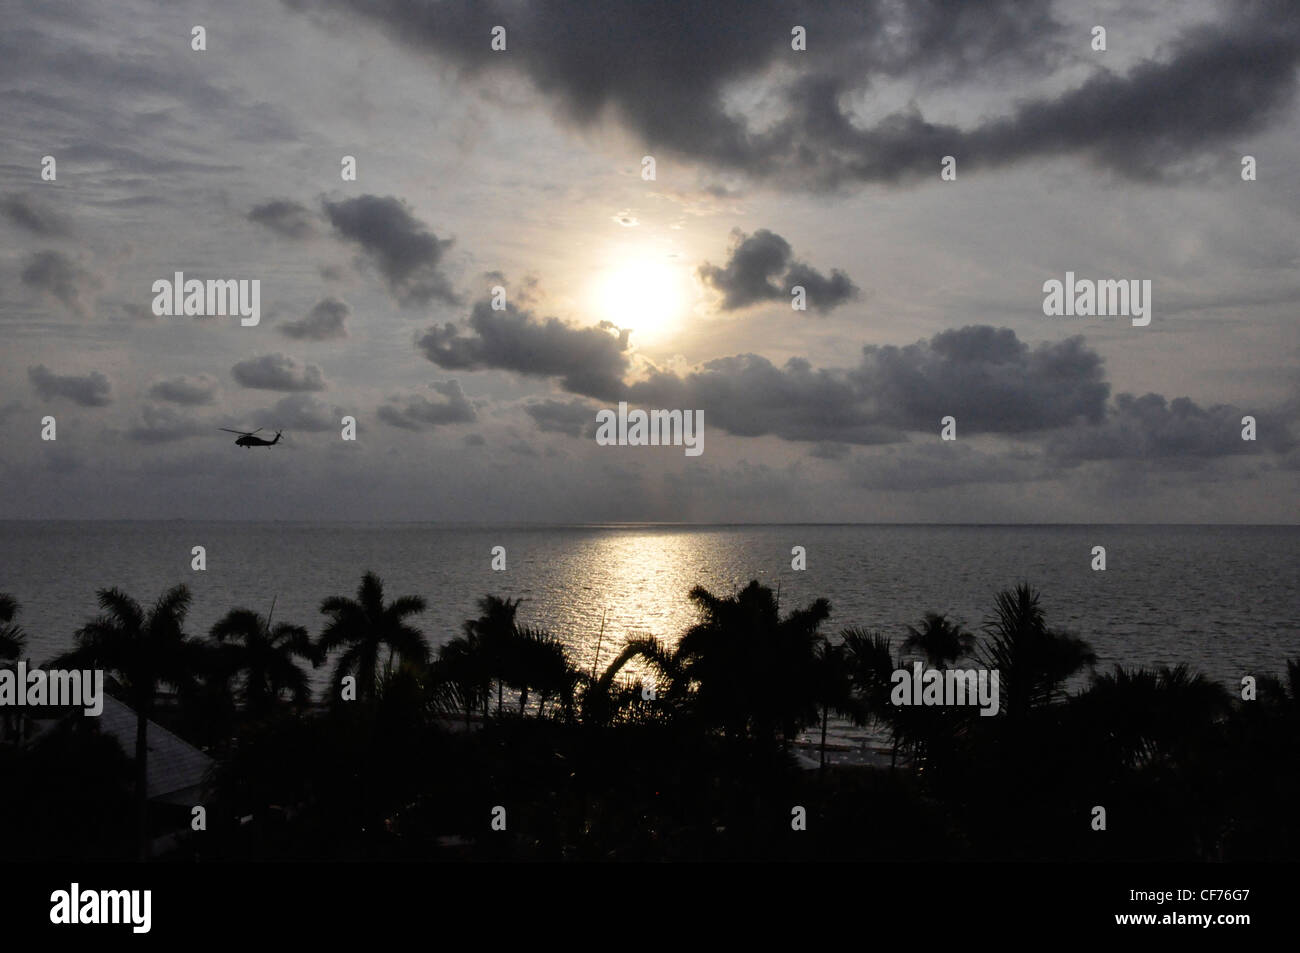 Serata sub tropicale esotico seascape tramonto nuvole Foto Stock